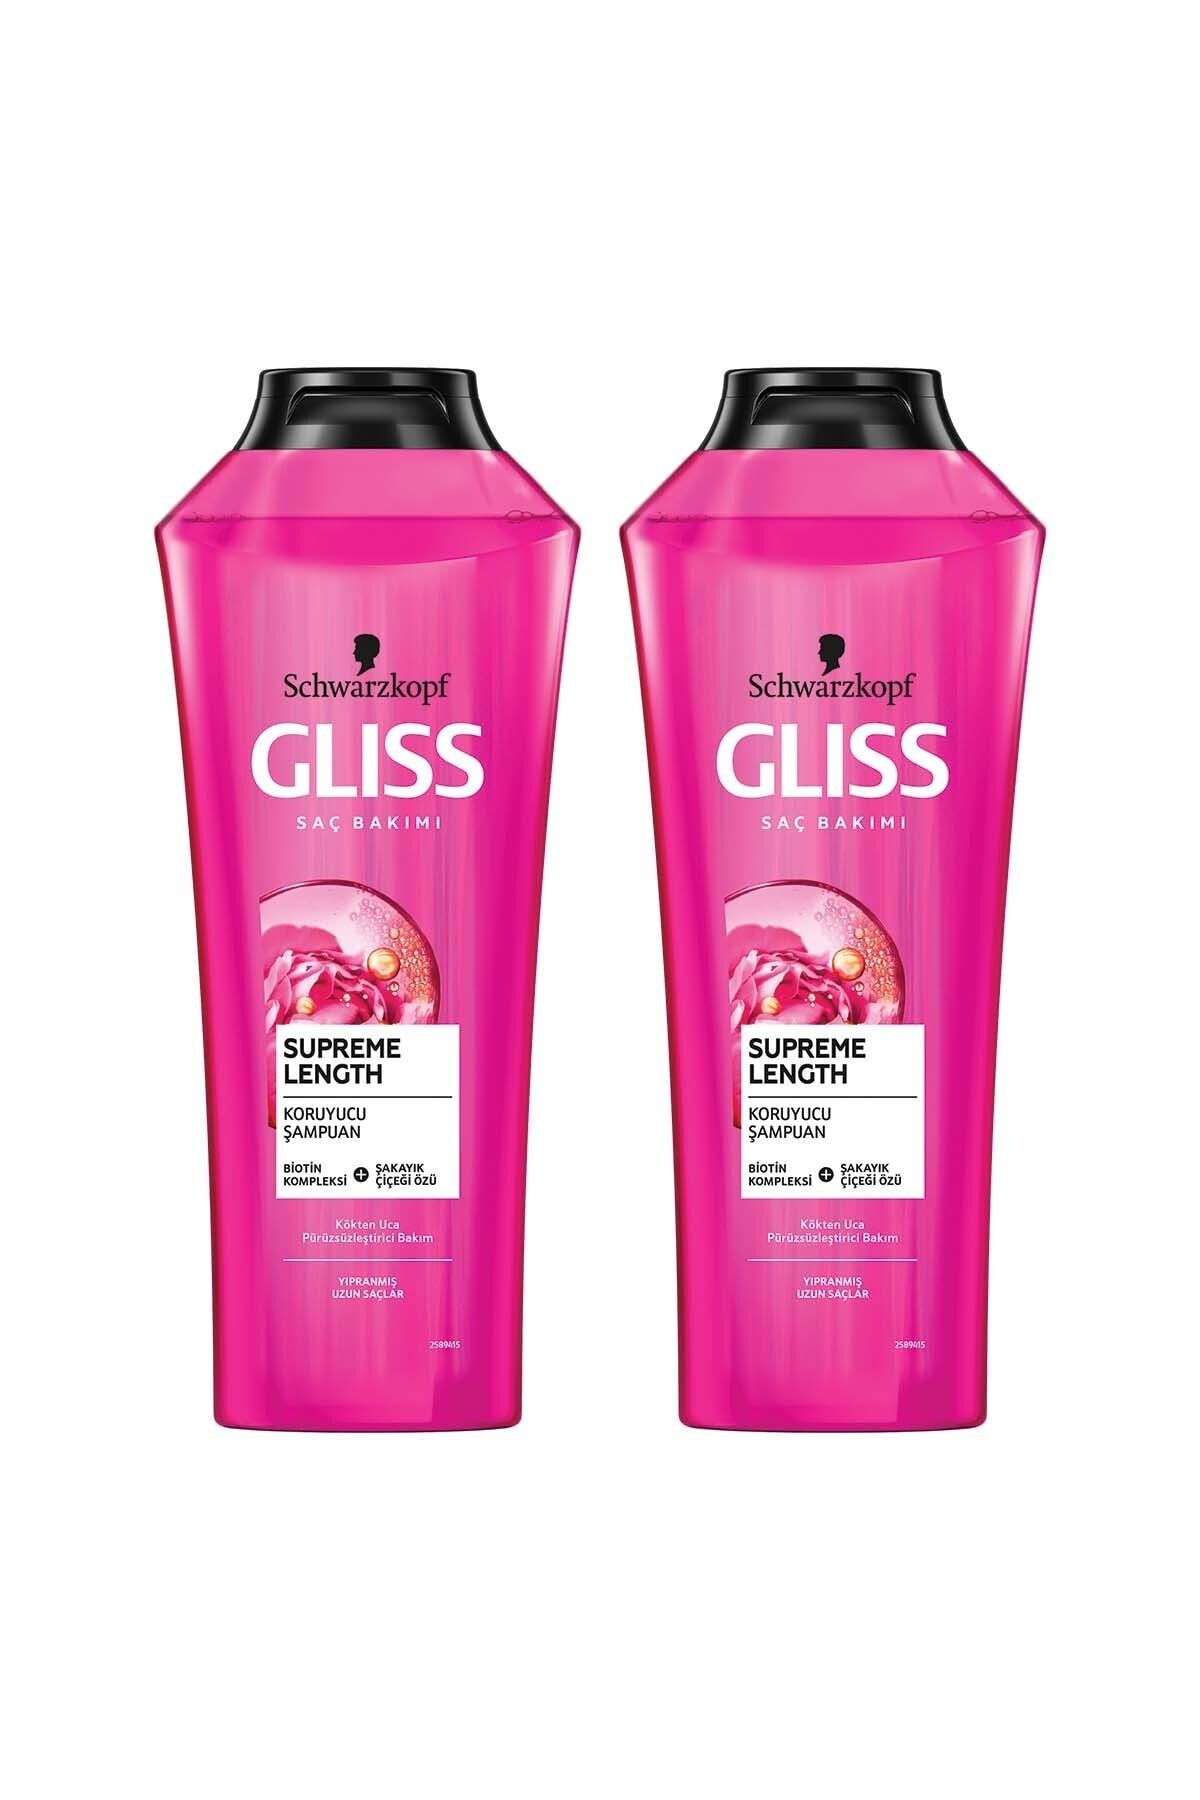 Gliss Supreme Length Koruyucu Şampuan - Biotin Kompleksi Ve Şakayık Çiçeği Özü Ile 400 ml X 2 Adet